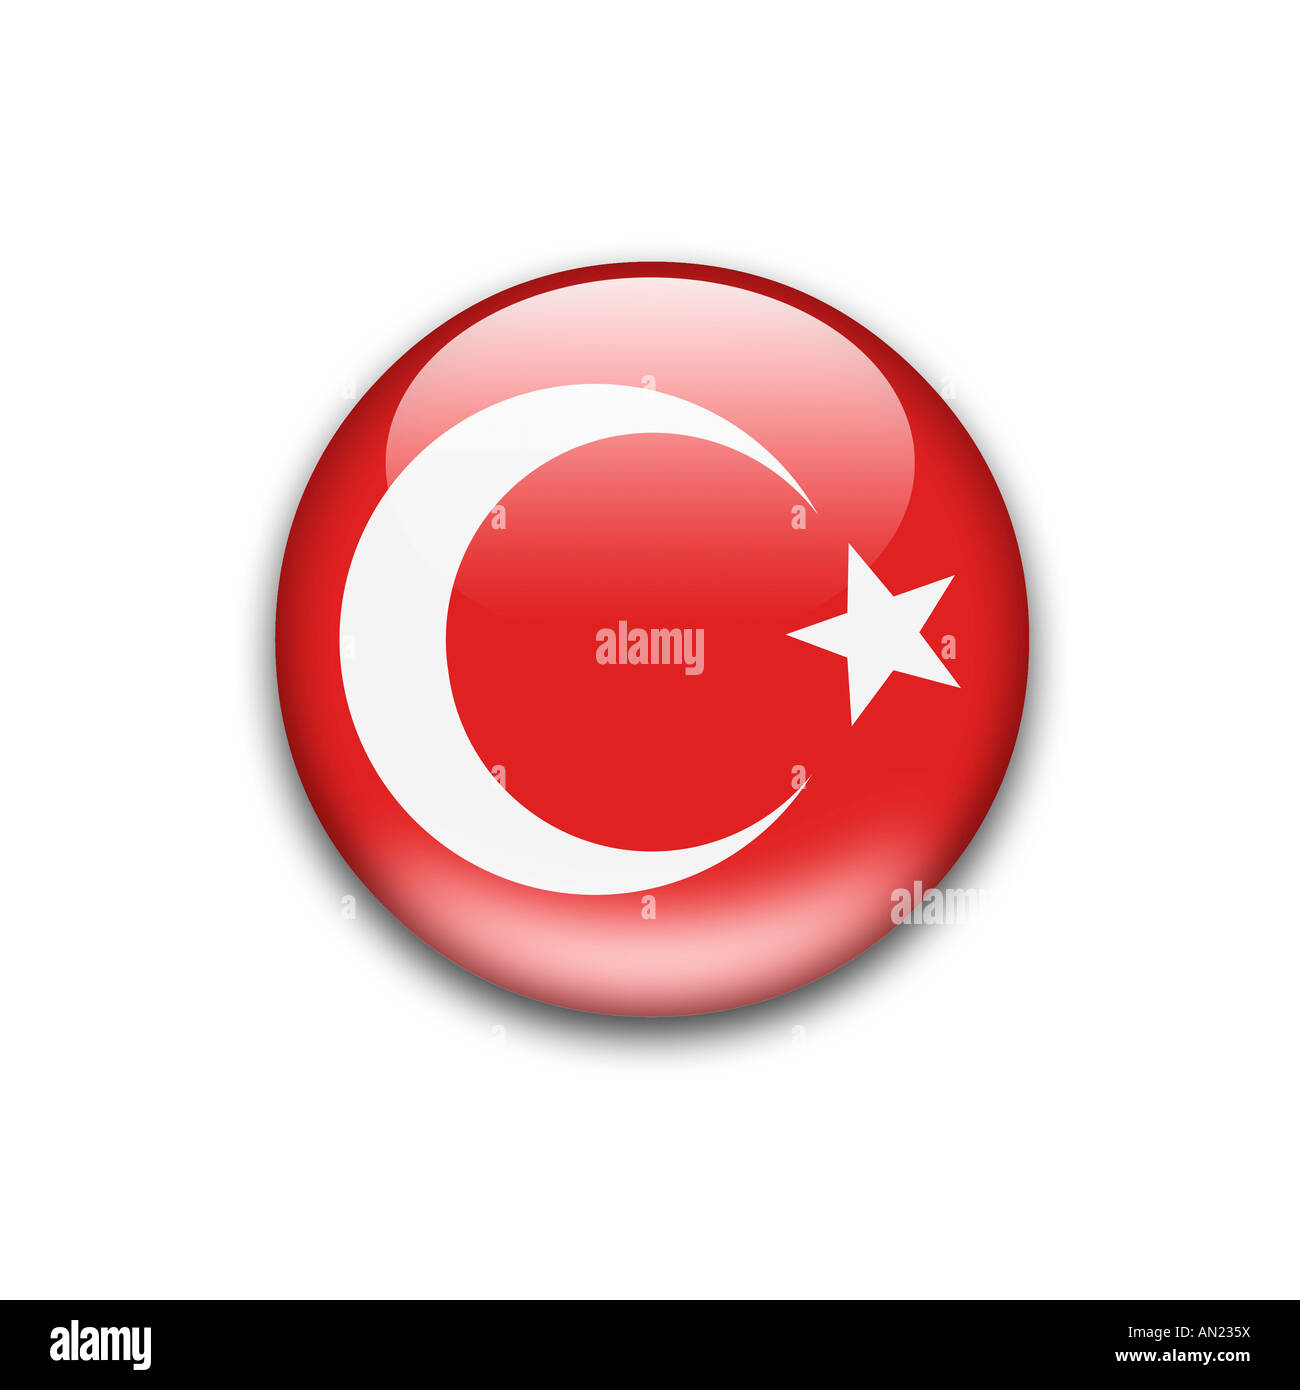 drapeau de la Turquie Banque D'Images